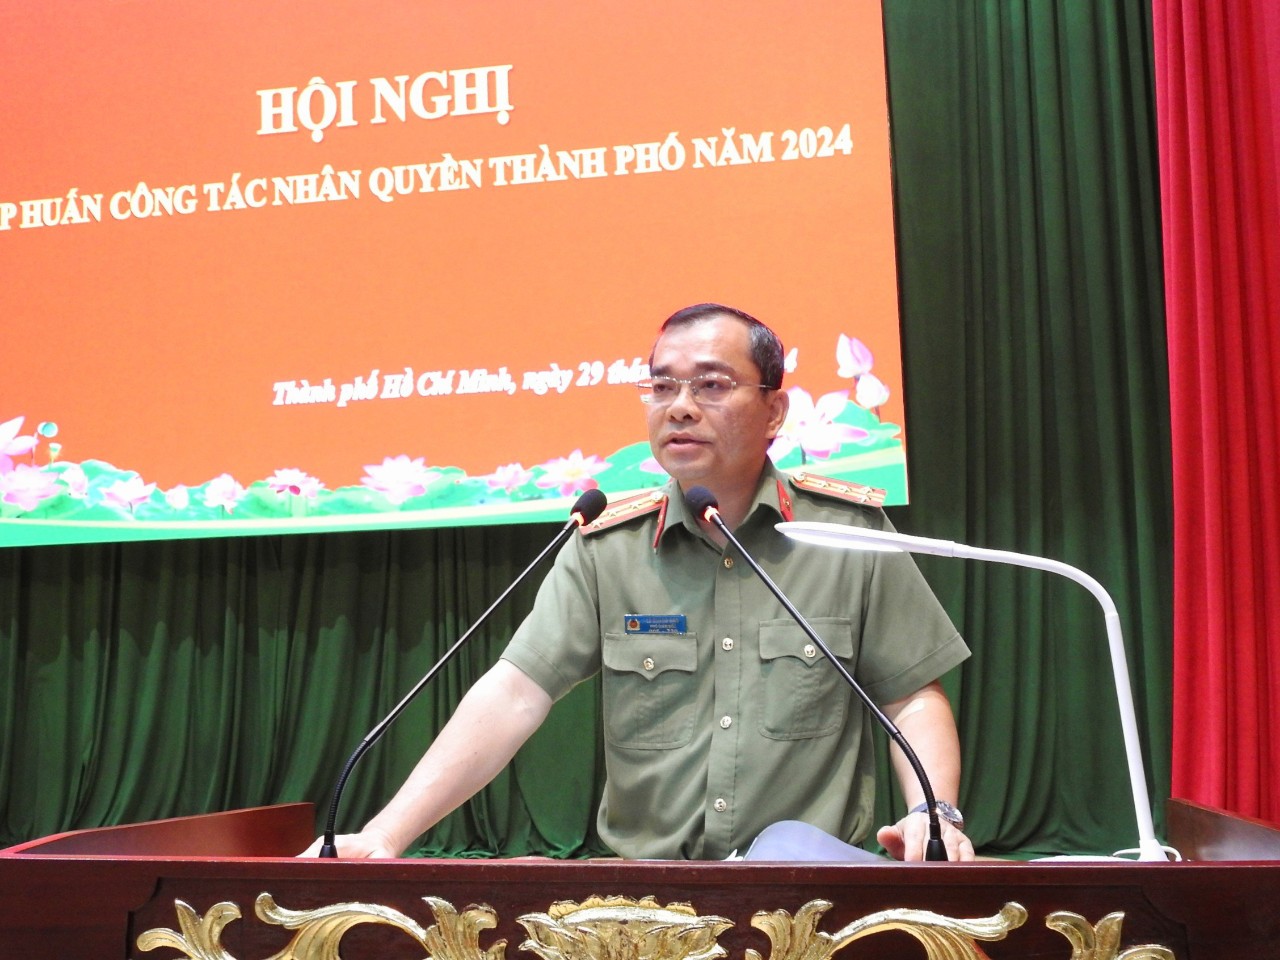 Đại tá Lê Quang Đạo - Phó Giám đốc Công an thành phố Hồ Chí Minh phát biểu tại hội nghị